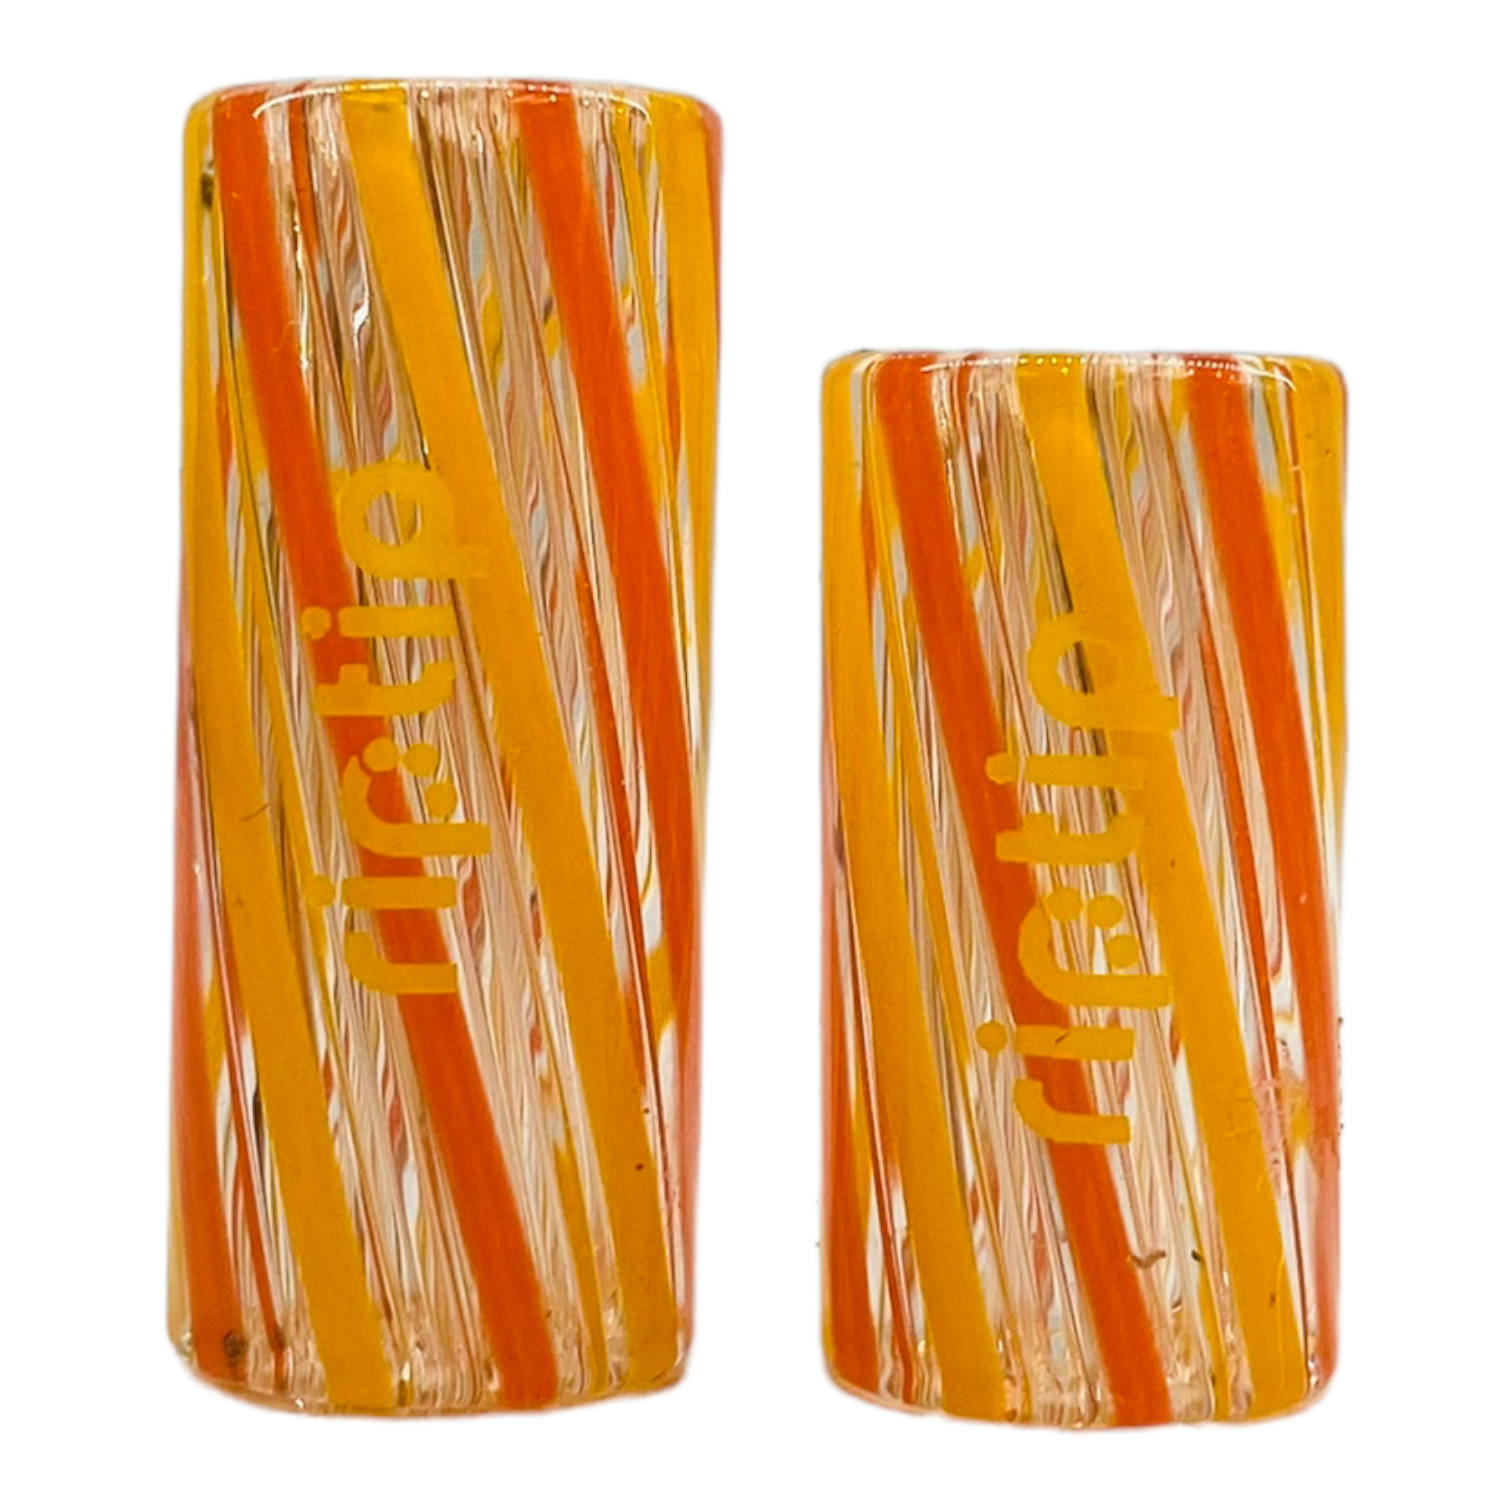 Gordo Scientific - RipTip - Citrus Orange & Yellow 13mm Wide Regular Length